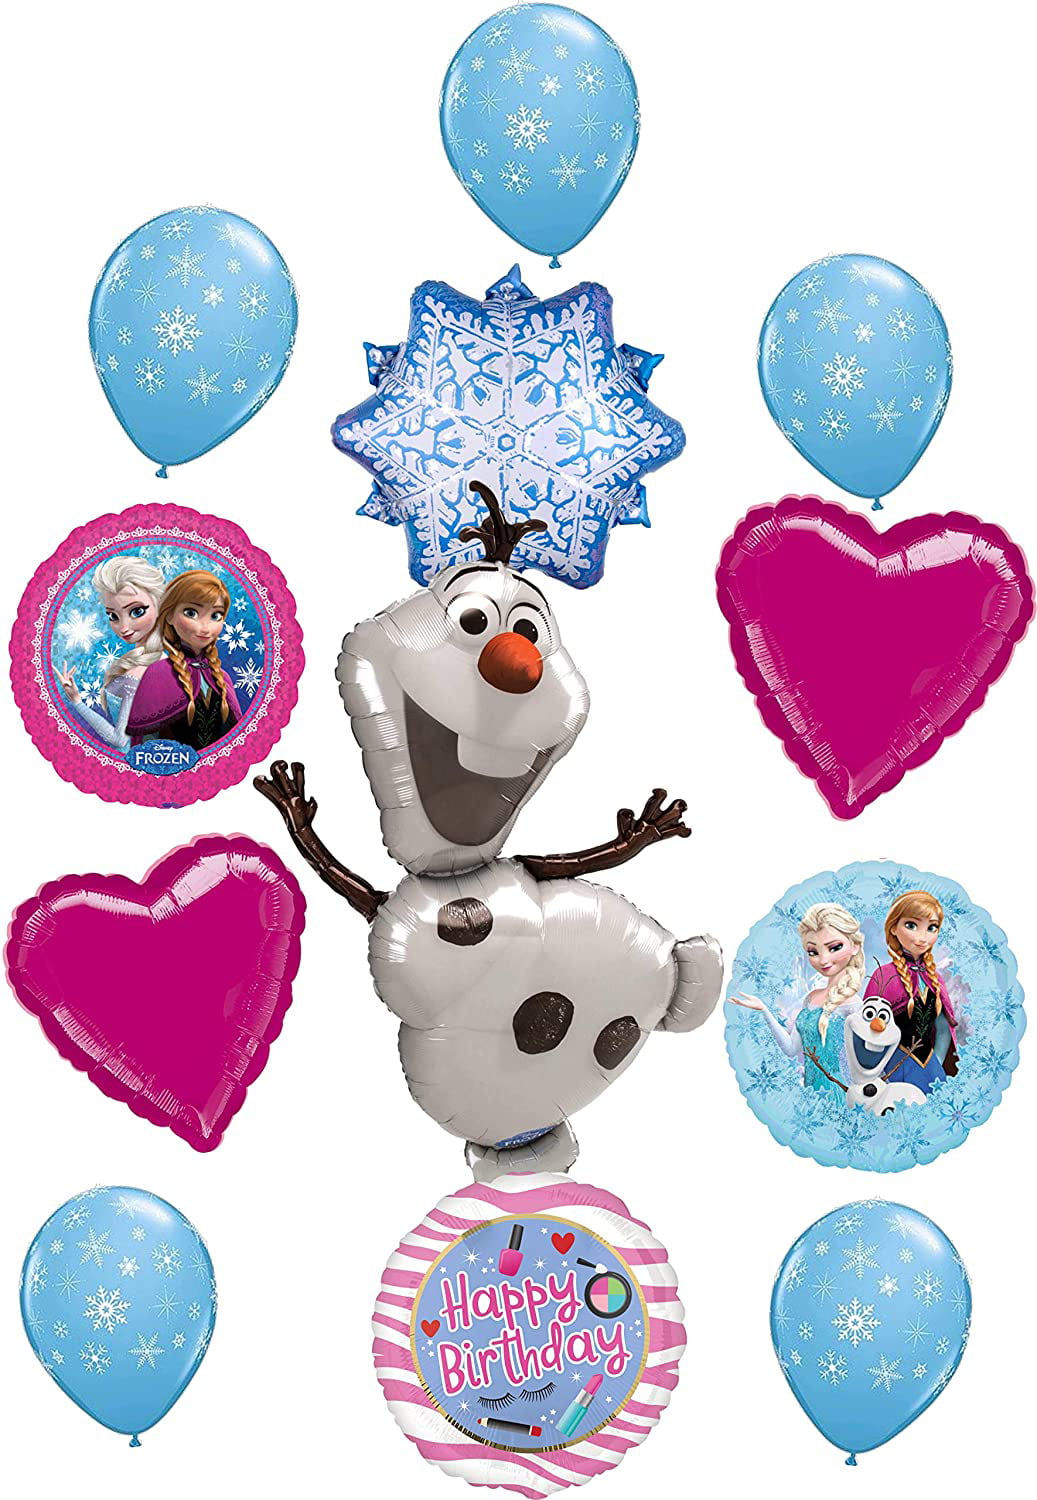 Giant Elsa Foil Balloon Frozen 2 Birthday Party Decorations 37" Elsa Balloon